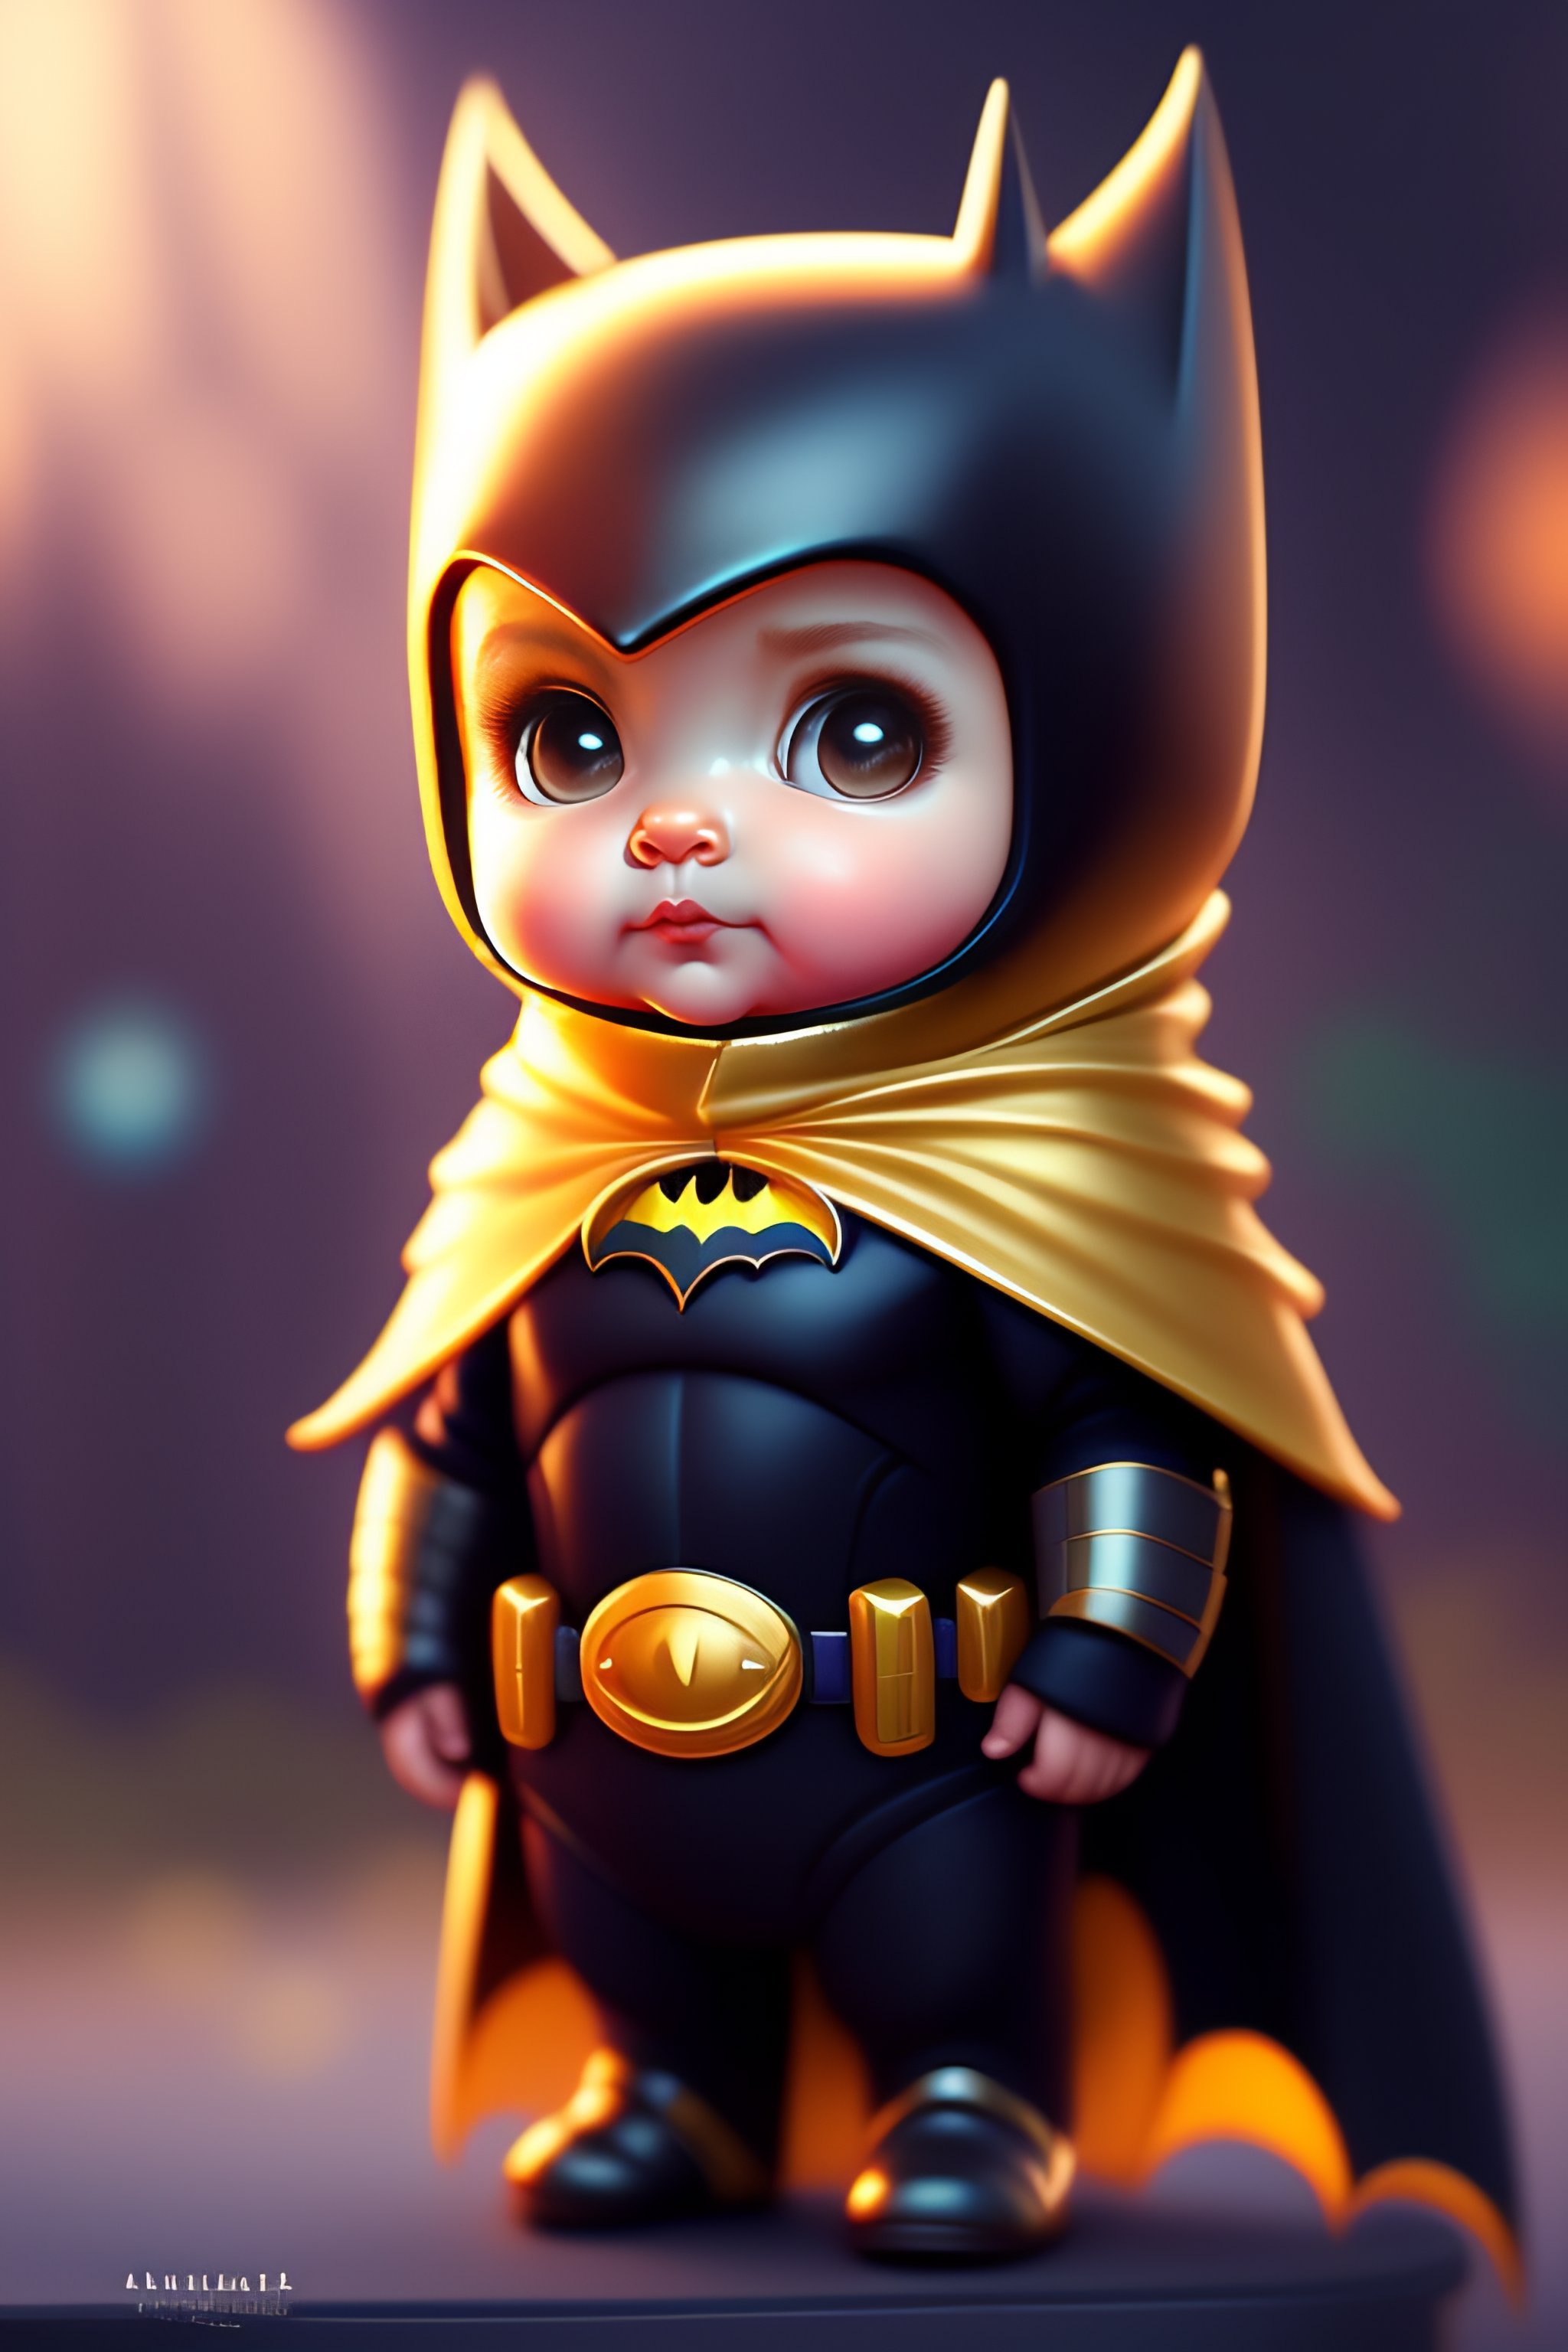 cute batman cartoon